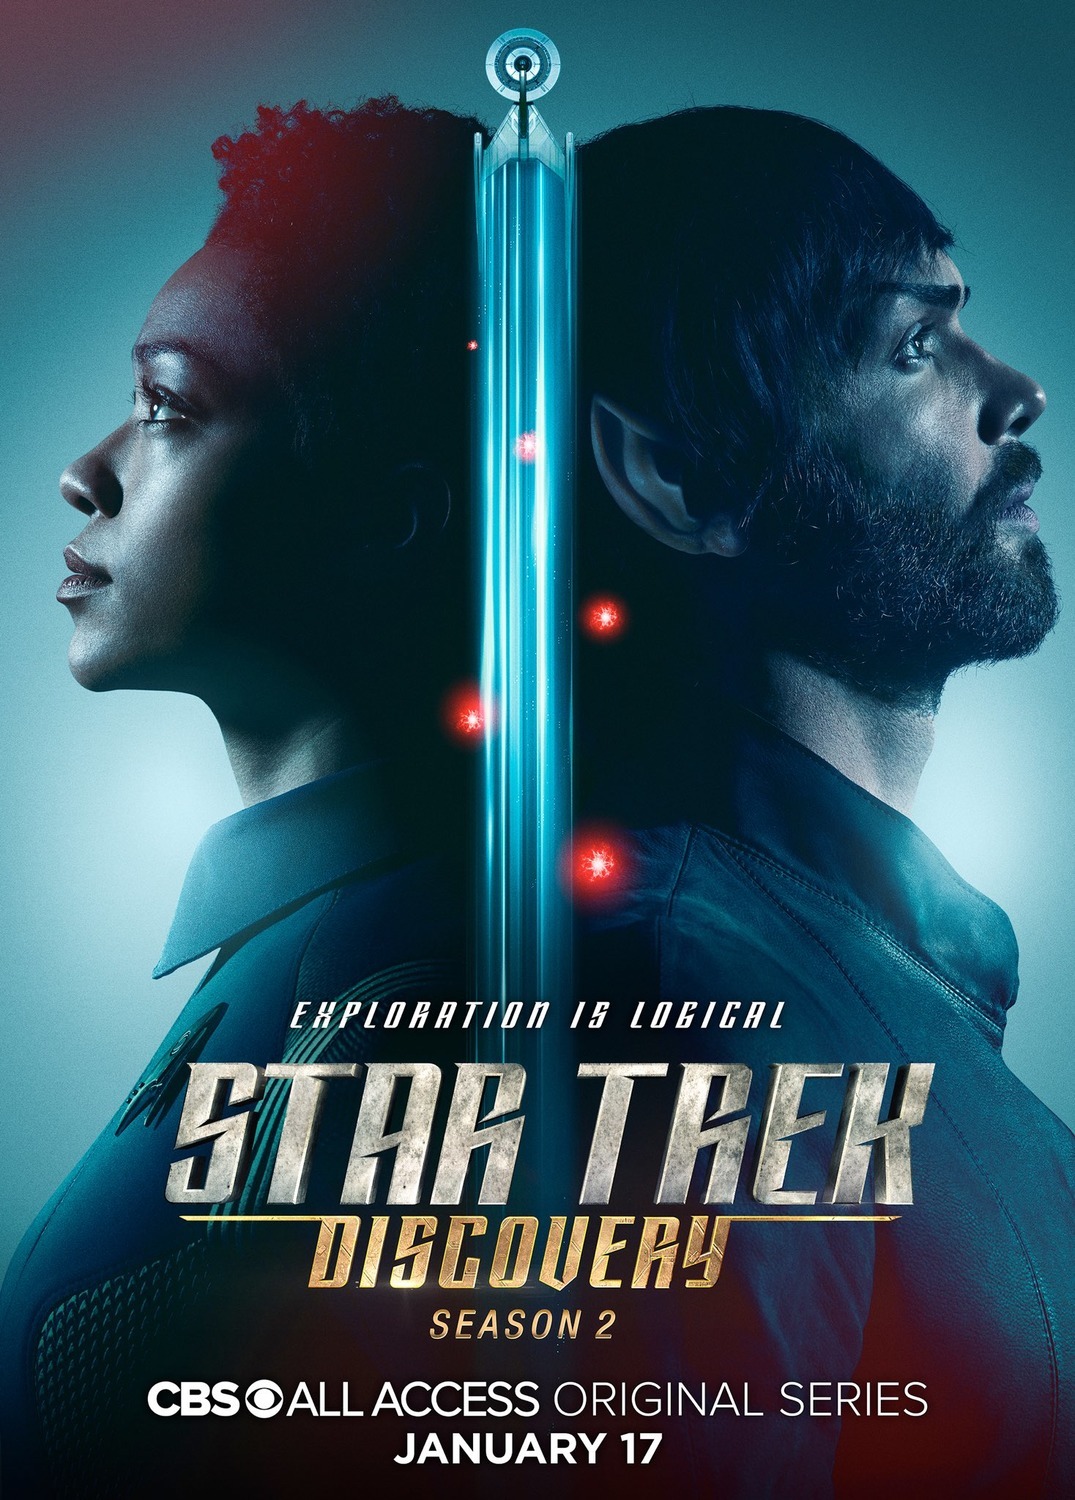 ดูหนังออนไลน์ Star Trek Discovery Season 2 EP.11 สตาร์ เทรค ดิสคัฟเวอรี่ ซีซั่นที่ 2 ตอนที่ 11